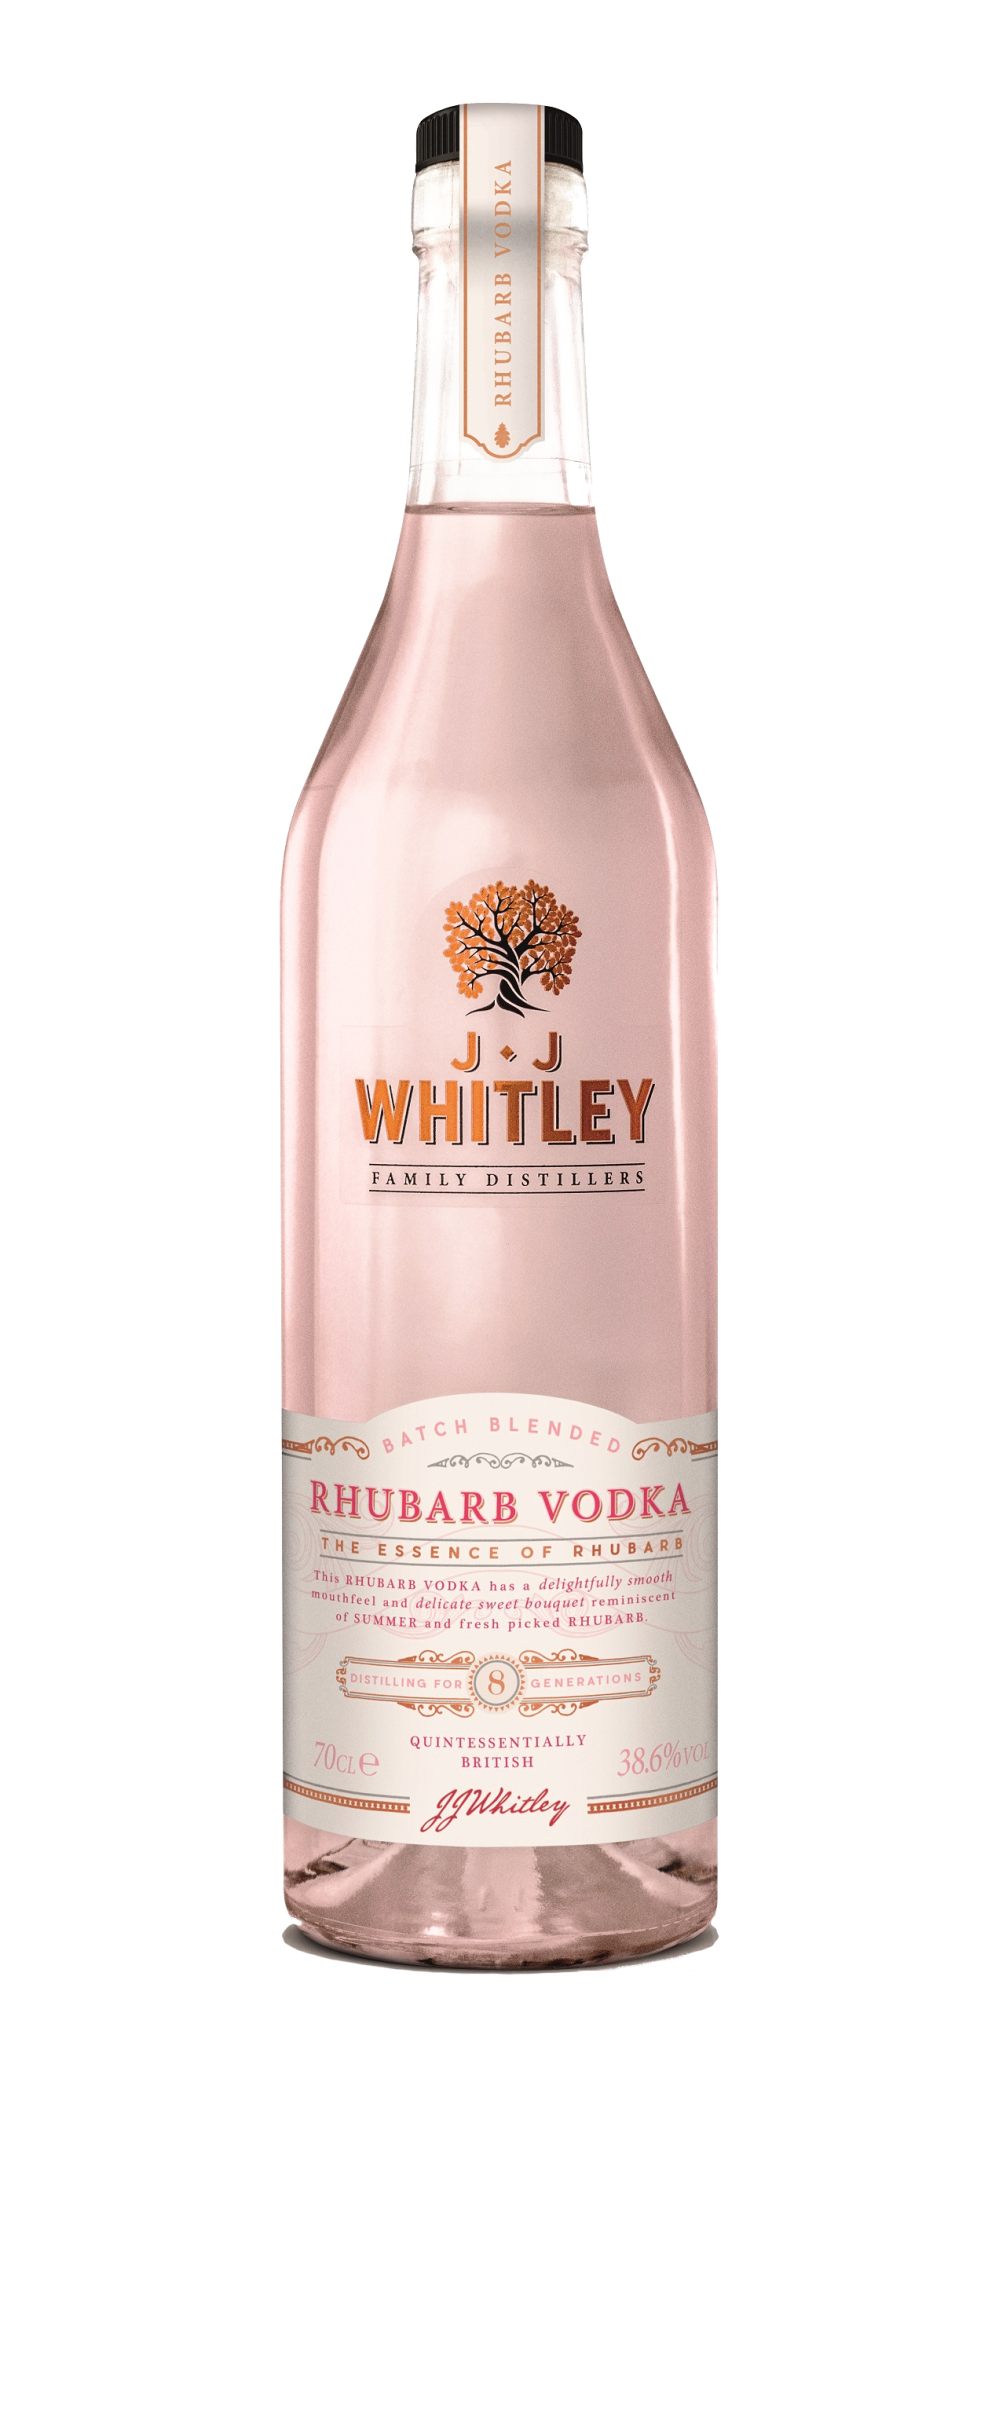 JJ Whitley Rhubarb Vodka 70cl 